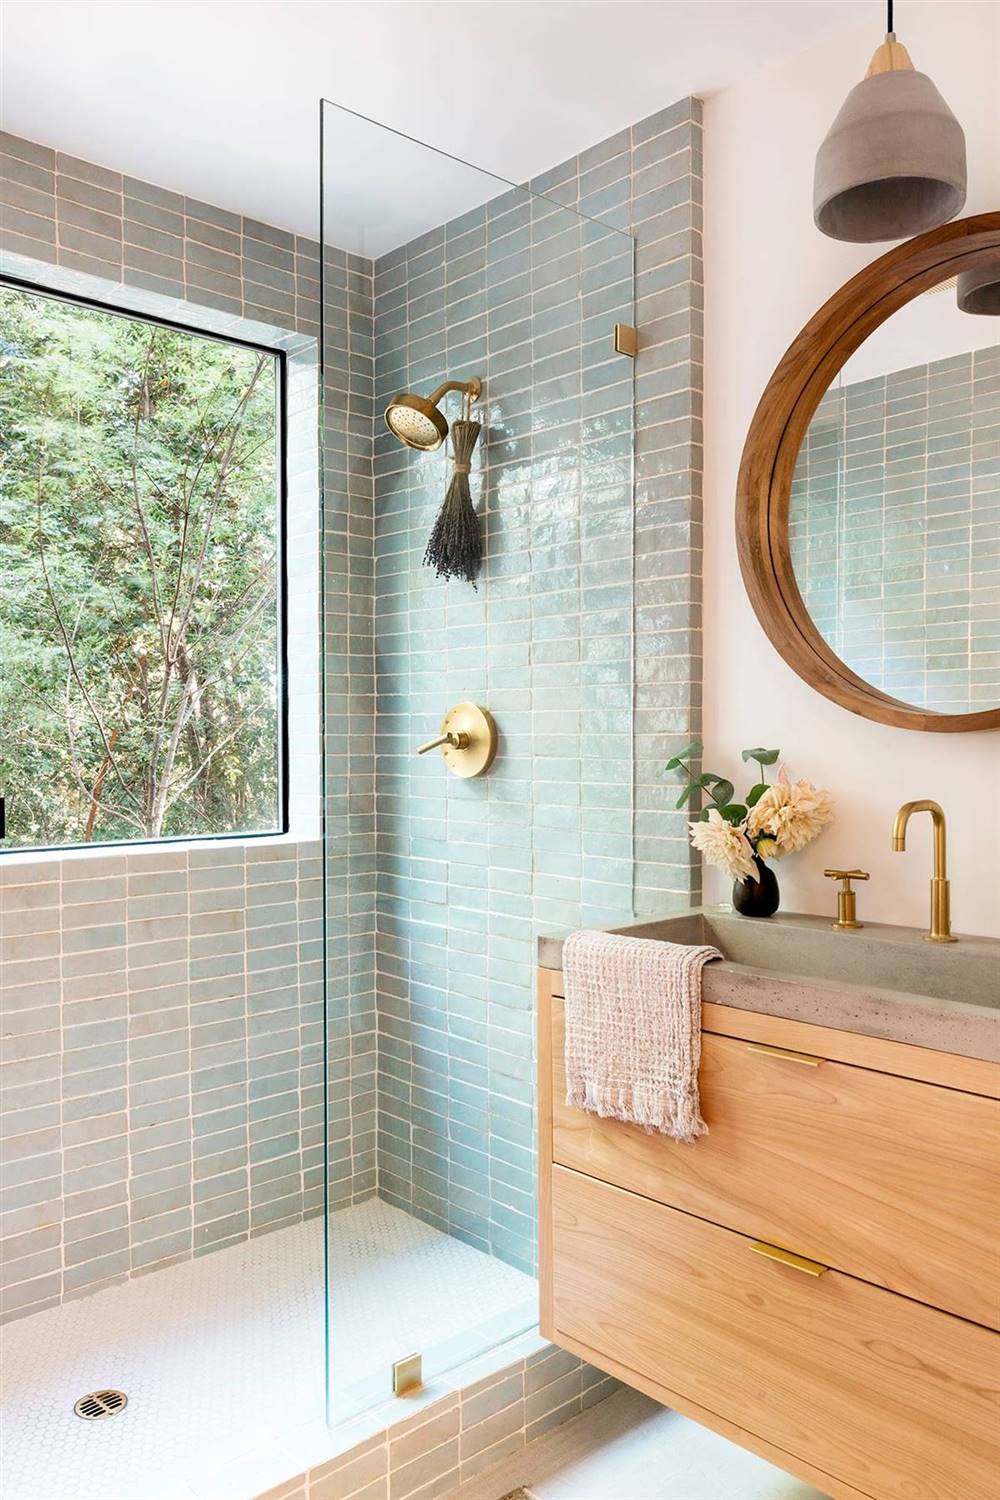 Baño moderno revestido con azulejos tipo metro y con ducha con mampara de cristal. 